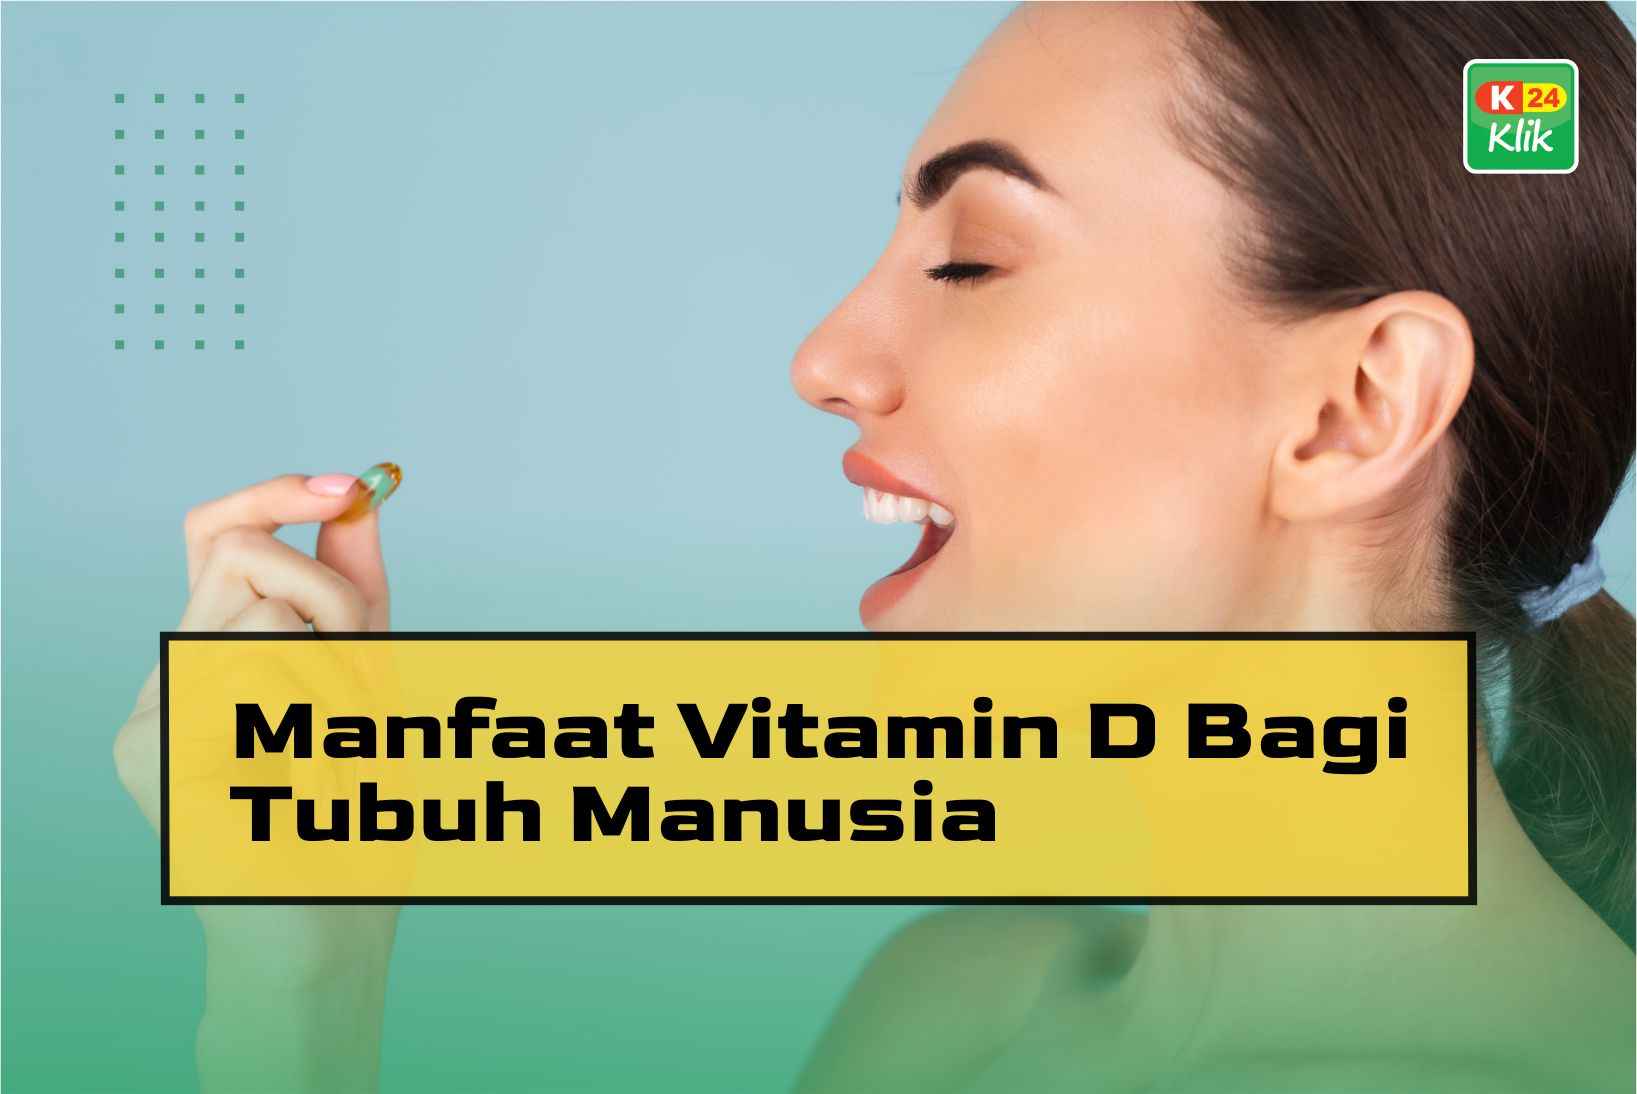 15 Manfaat Vitamin D Bagi Tubuh Manusia K24klik 